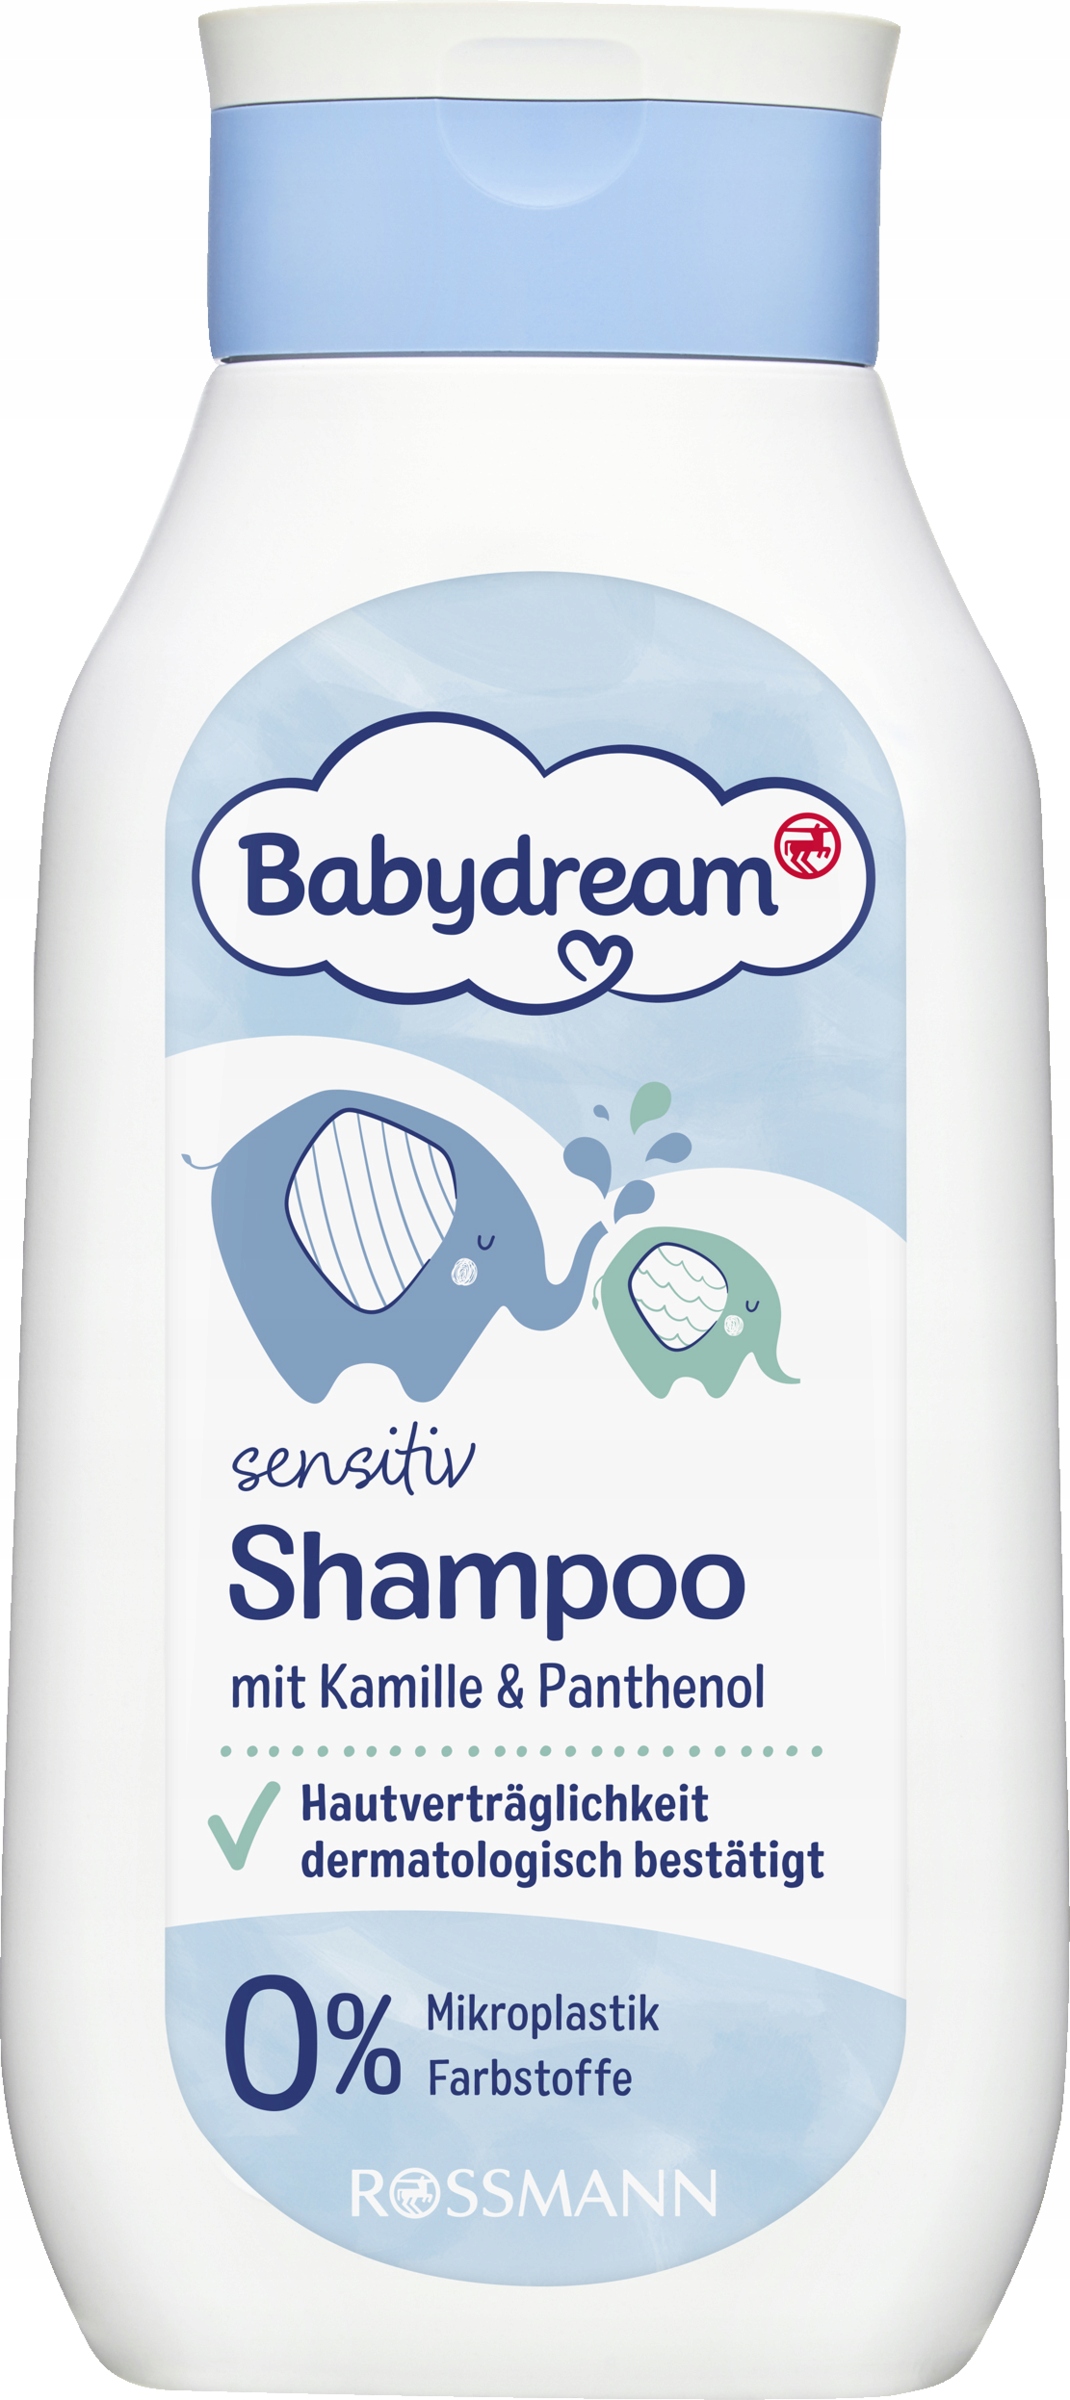 szampon do włosów kręconych babydream